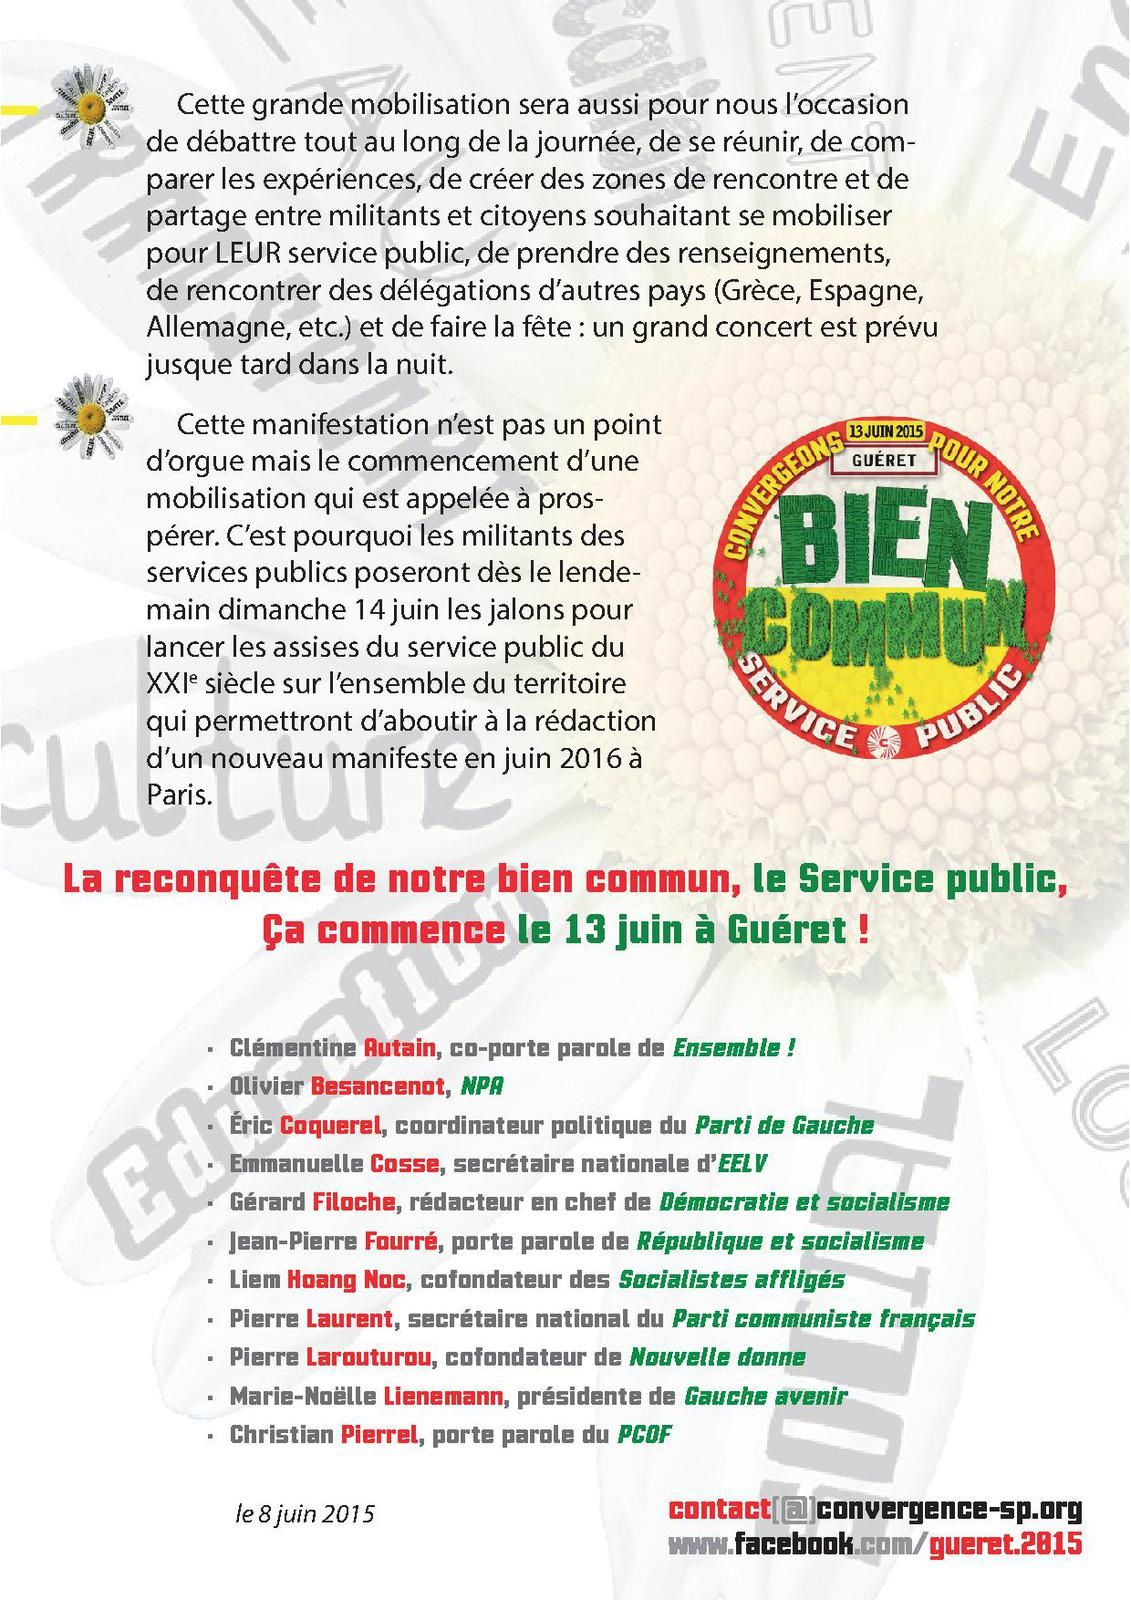 Le service public est notre bien commun, manifestation nationale le 13 juin à Guéret !